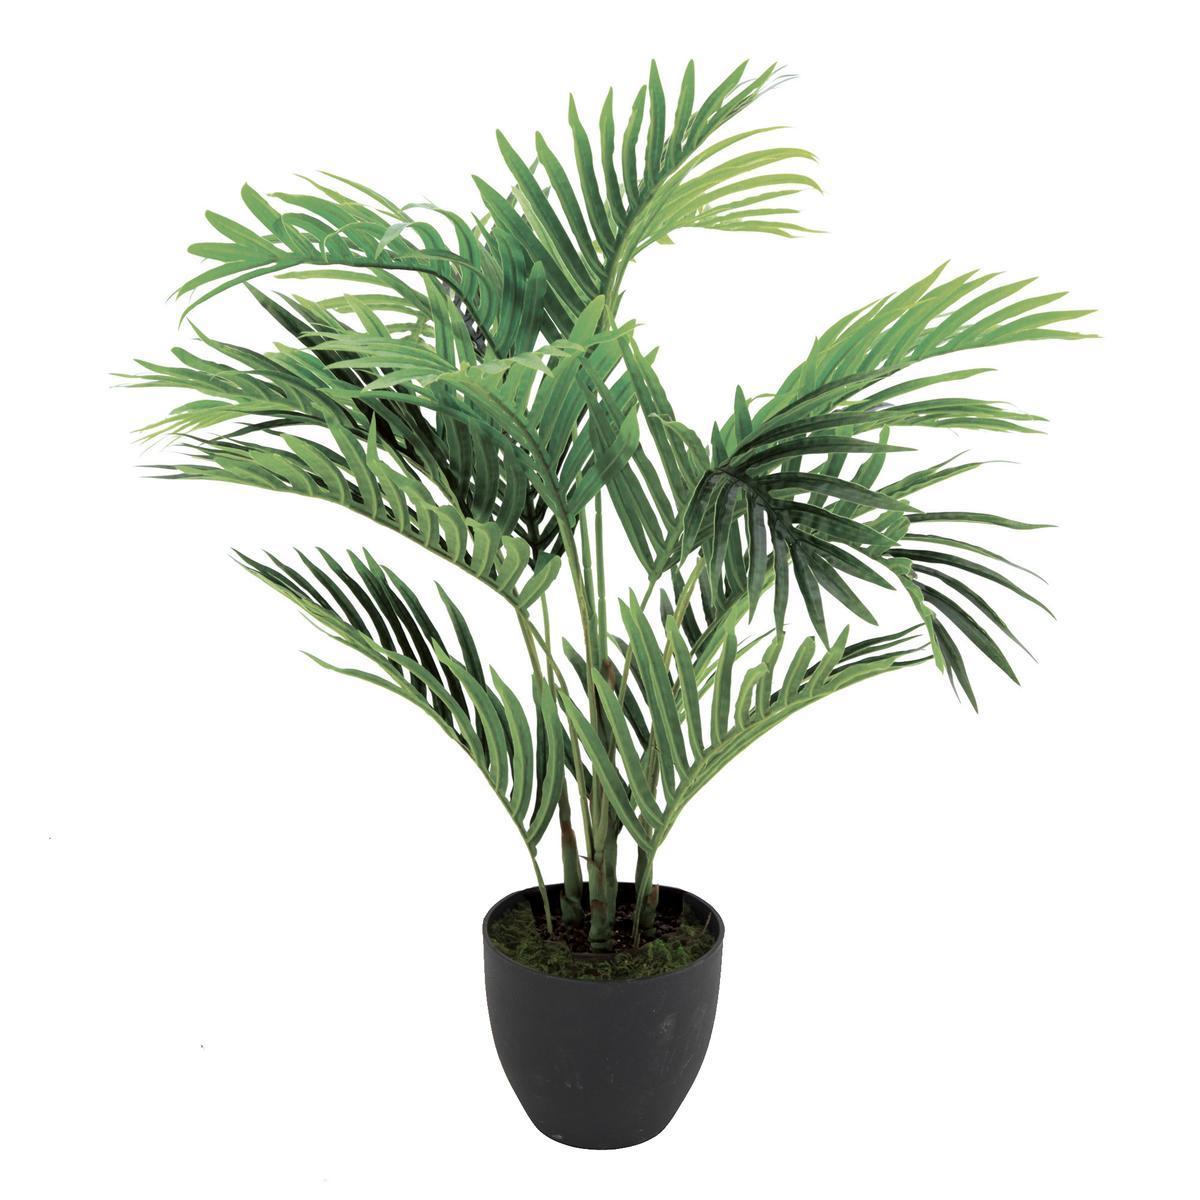 Palmier Areca en pot - H 70 cm